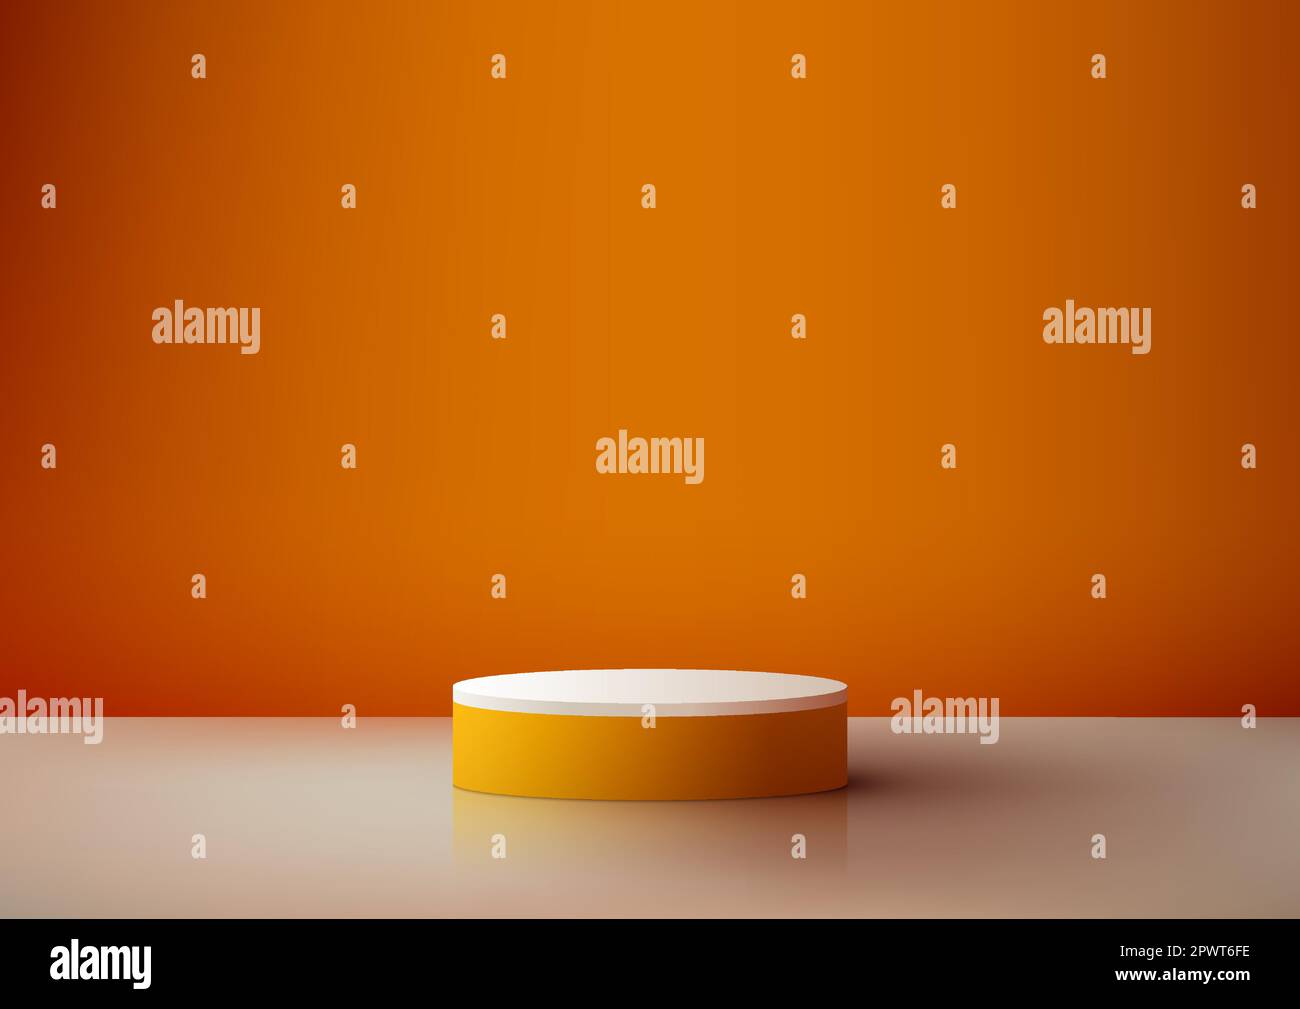 3D realistische, leere Podium-Plattform in Orange und Weiß auf orangefarbenem Hintergrund minimalistischer Stil. Sie können sie für kosmetische Präsentationen verwenden Stock Vektor